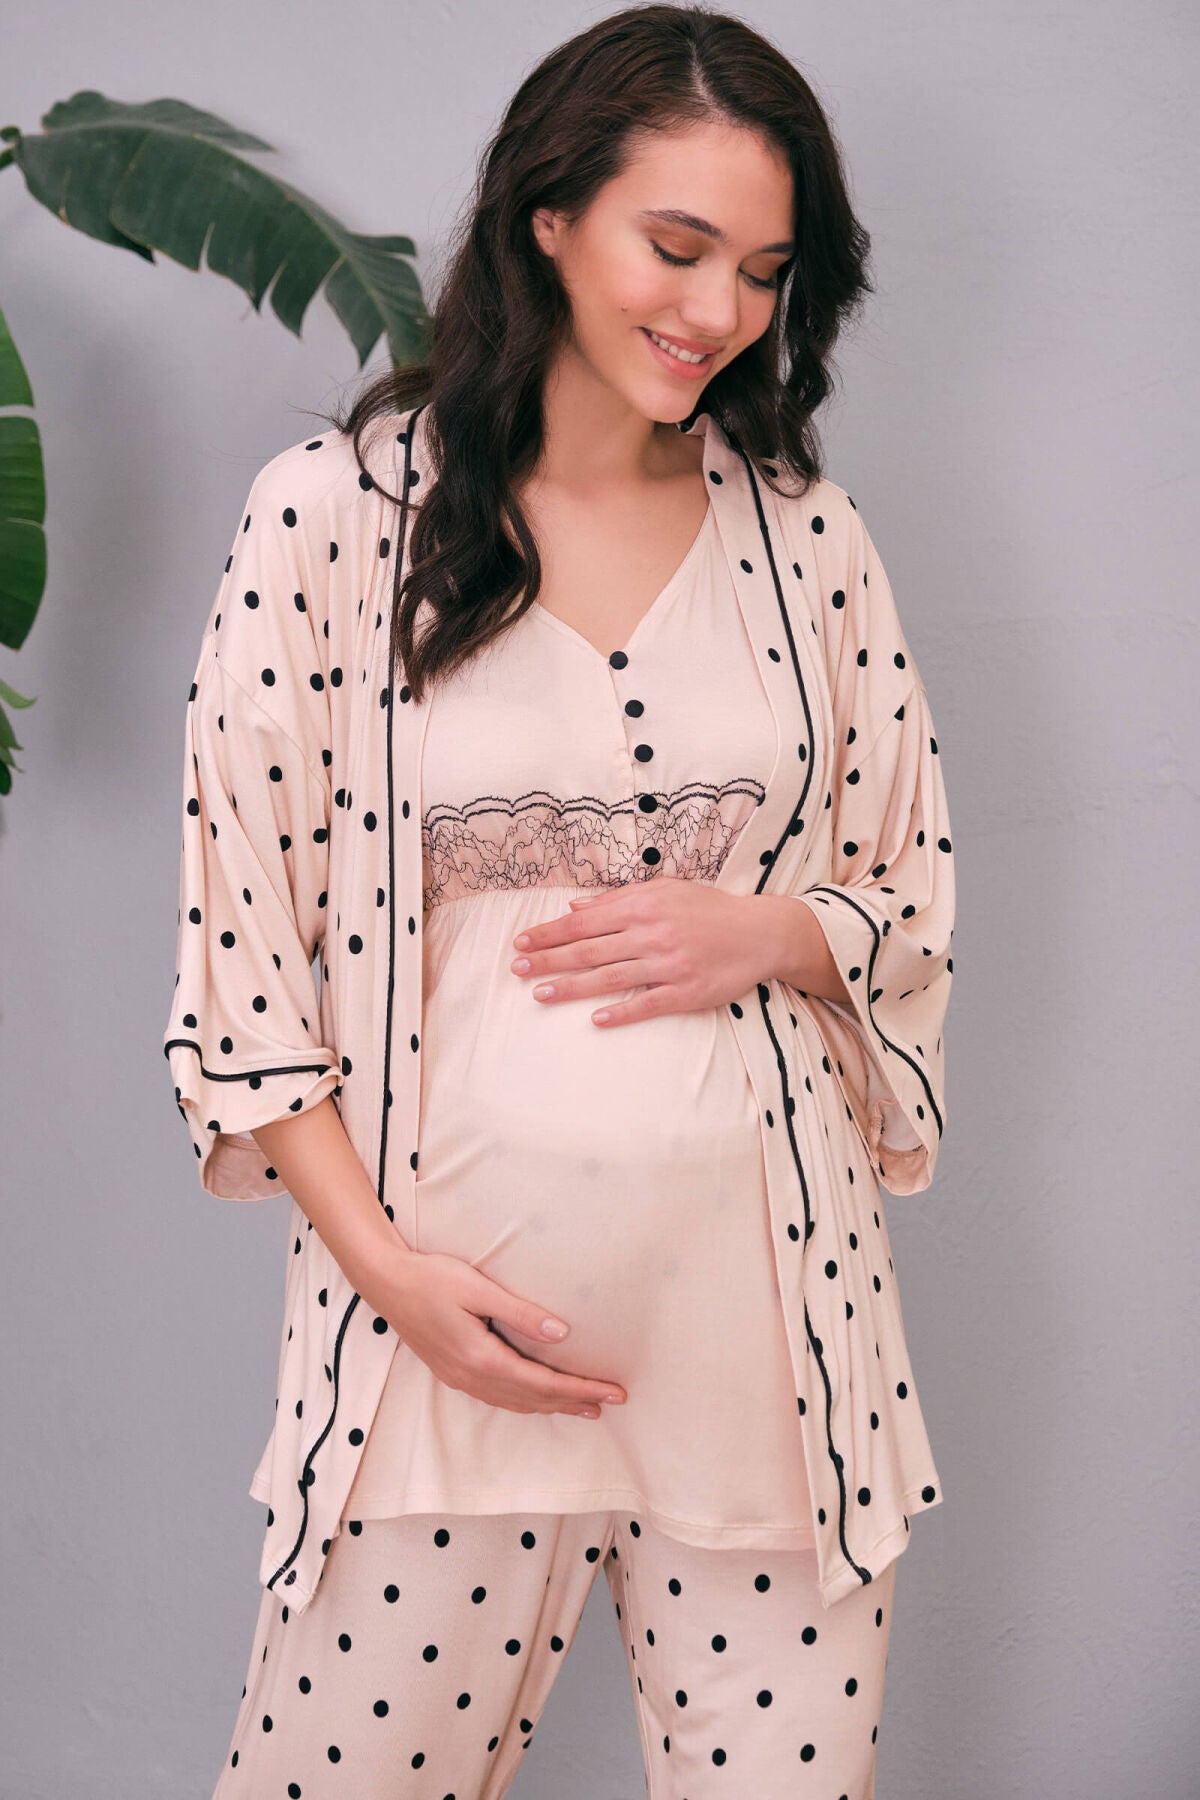 Shopymommy 565554 Polka Dot Lace 4 Pieces Maternity & Nursing Set Pink